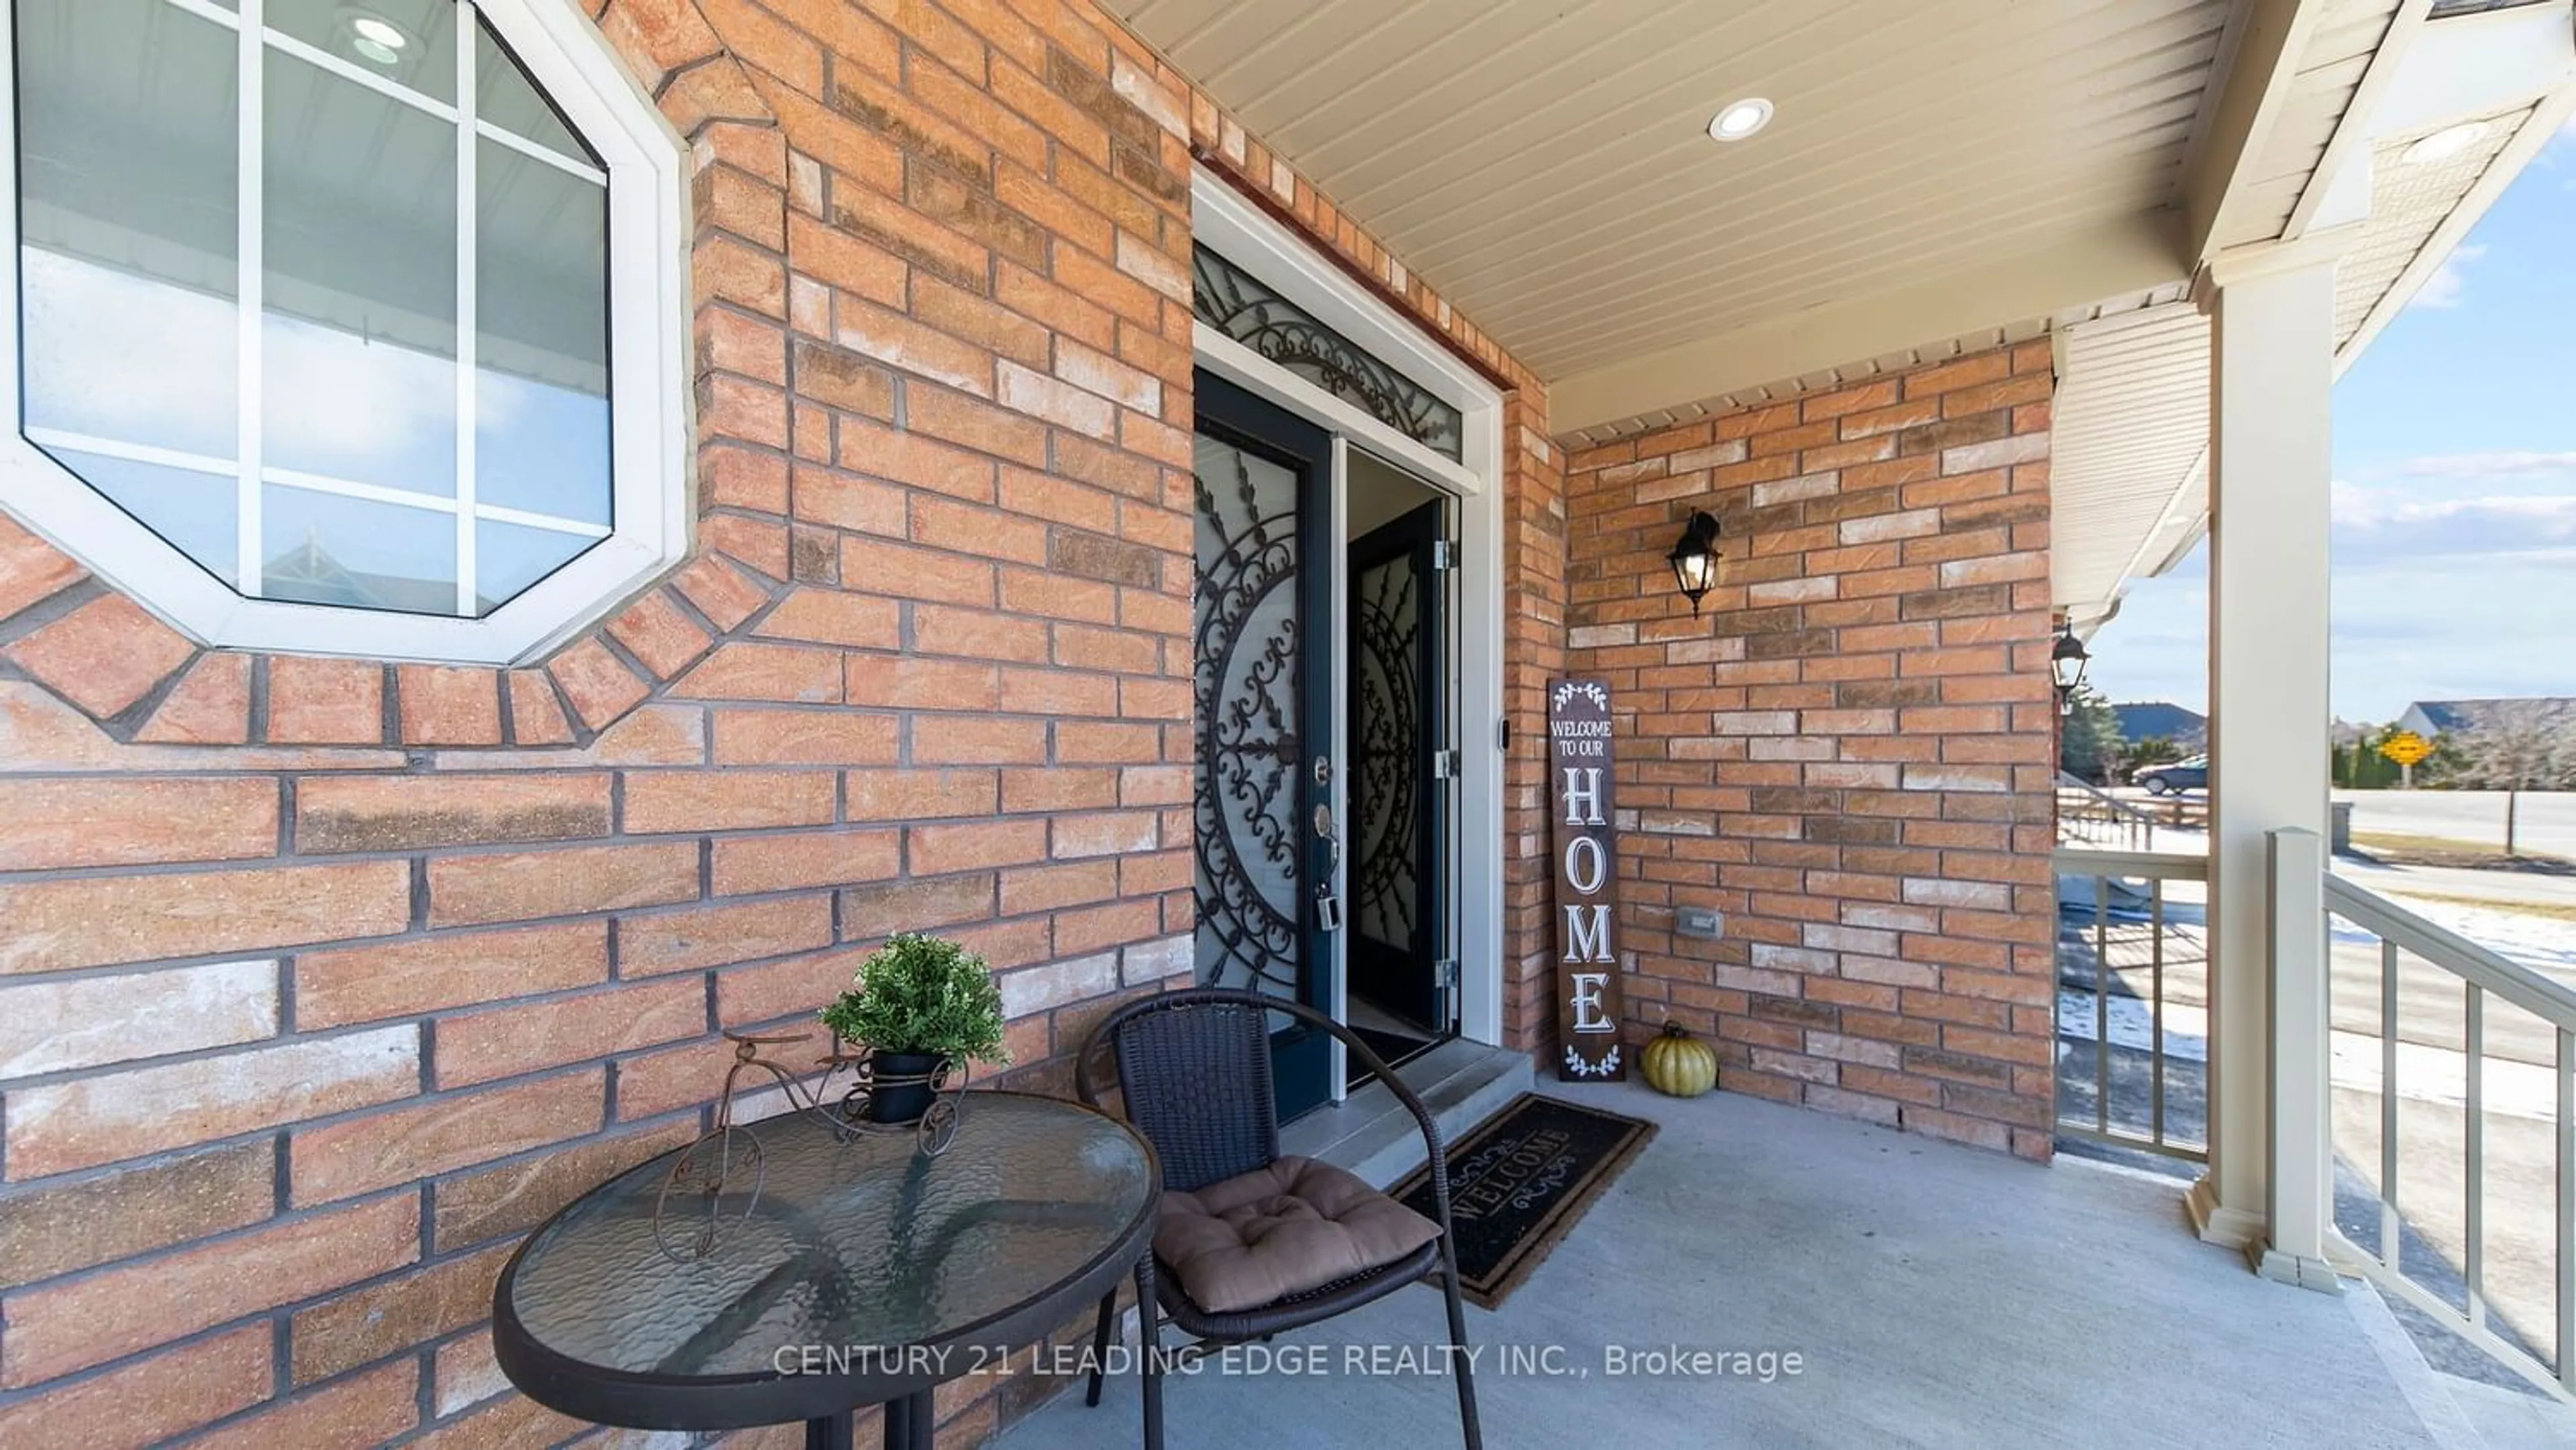 Home with brick exterior material for 11 William Fair Dr, Clarington Ontario L1C 0T1